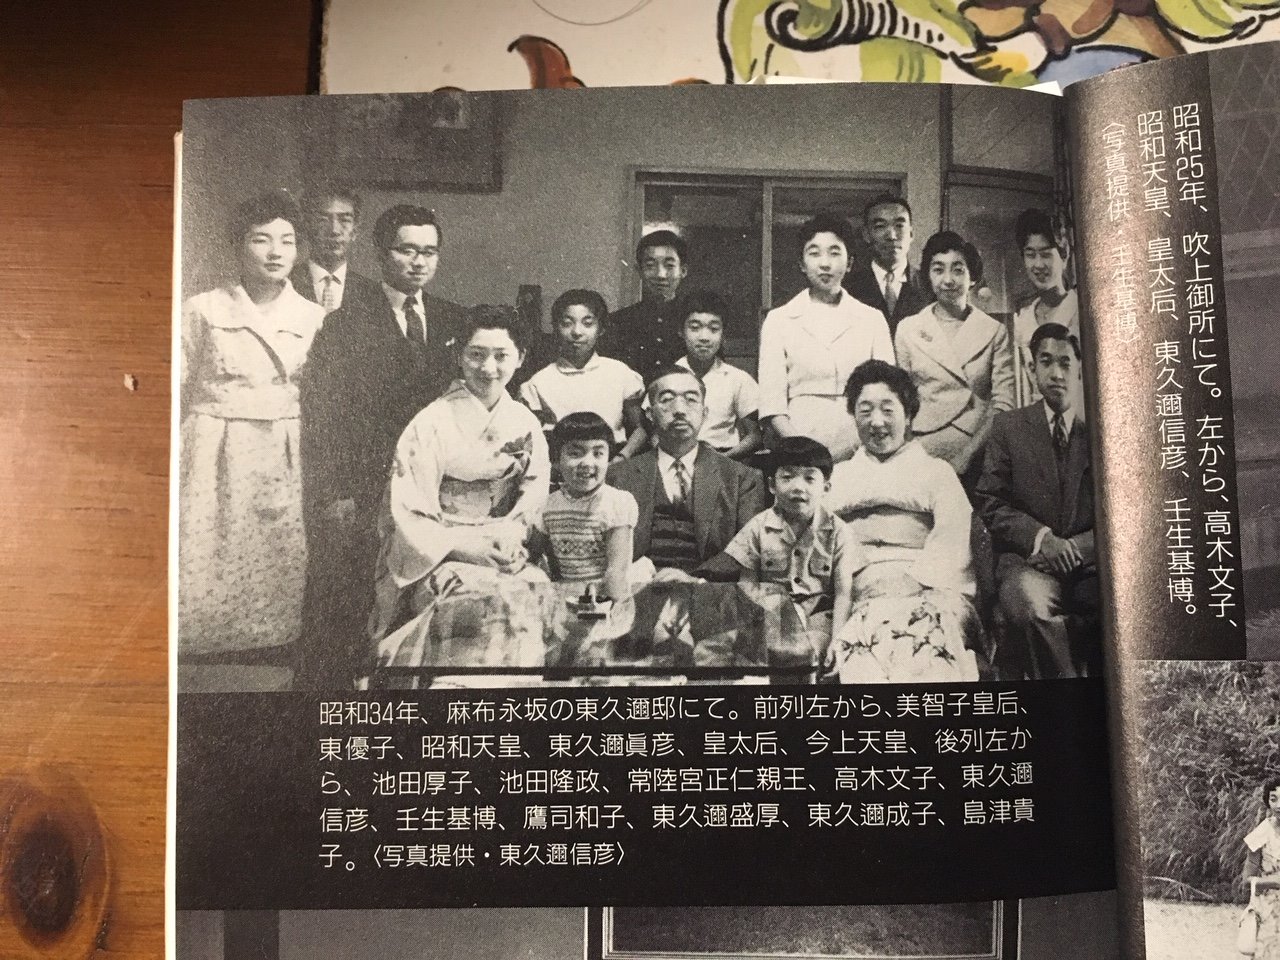 花鳥風月 古書店で購入した 19年光文社発行の 思い出の昭和天皇 おそばで拝見した素顔の陛下 に 掲載されていた写真です ご参考になれば幸いです